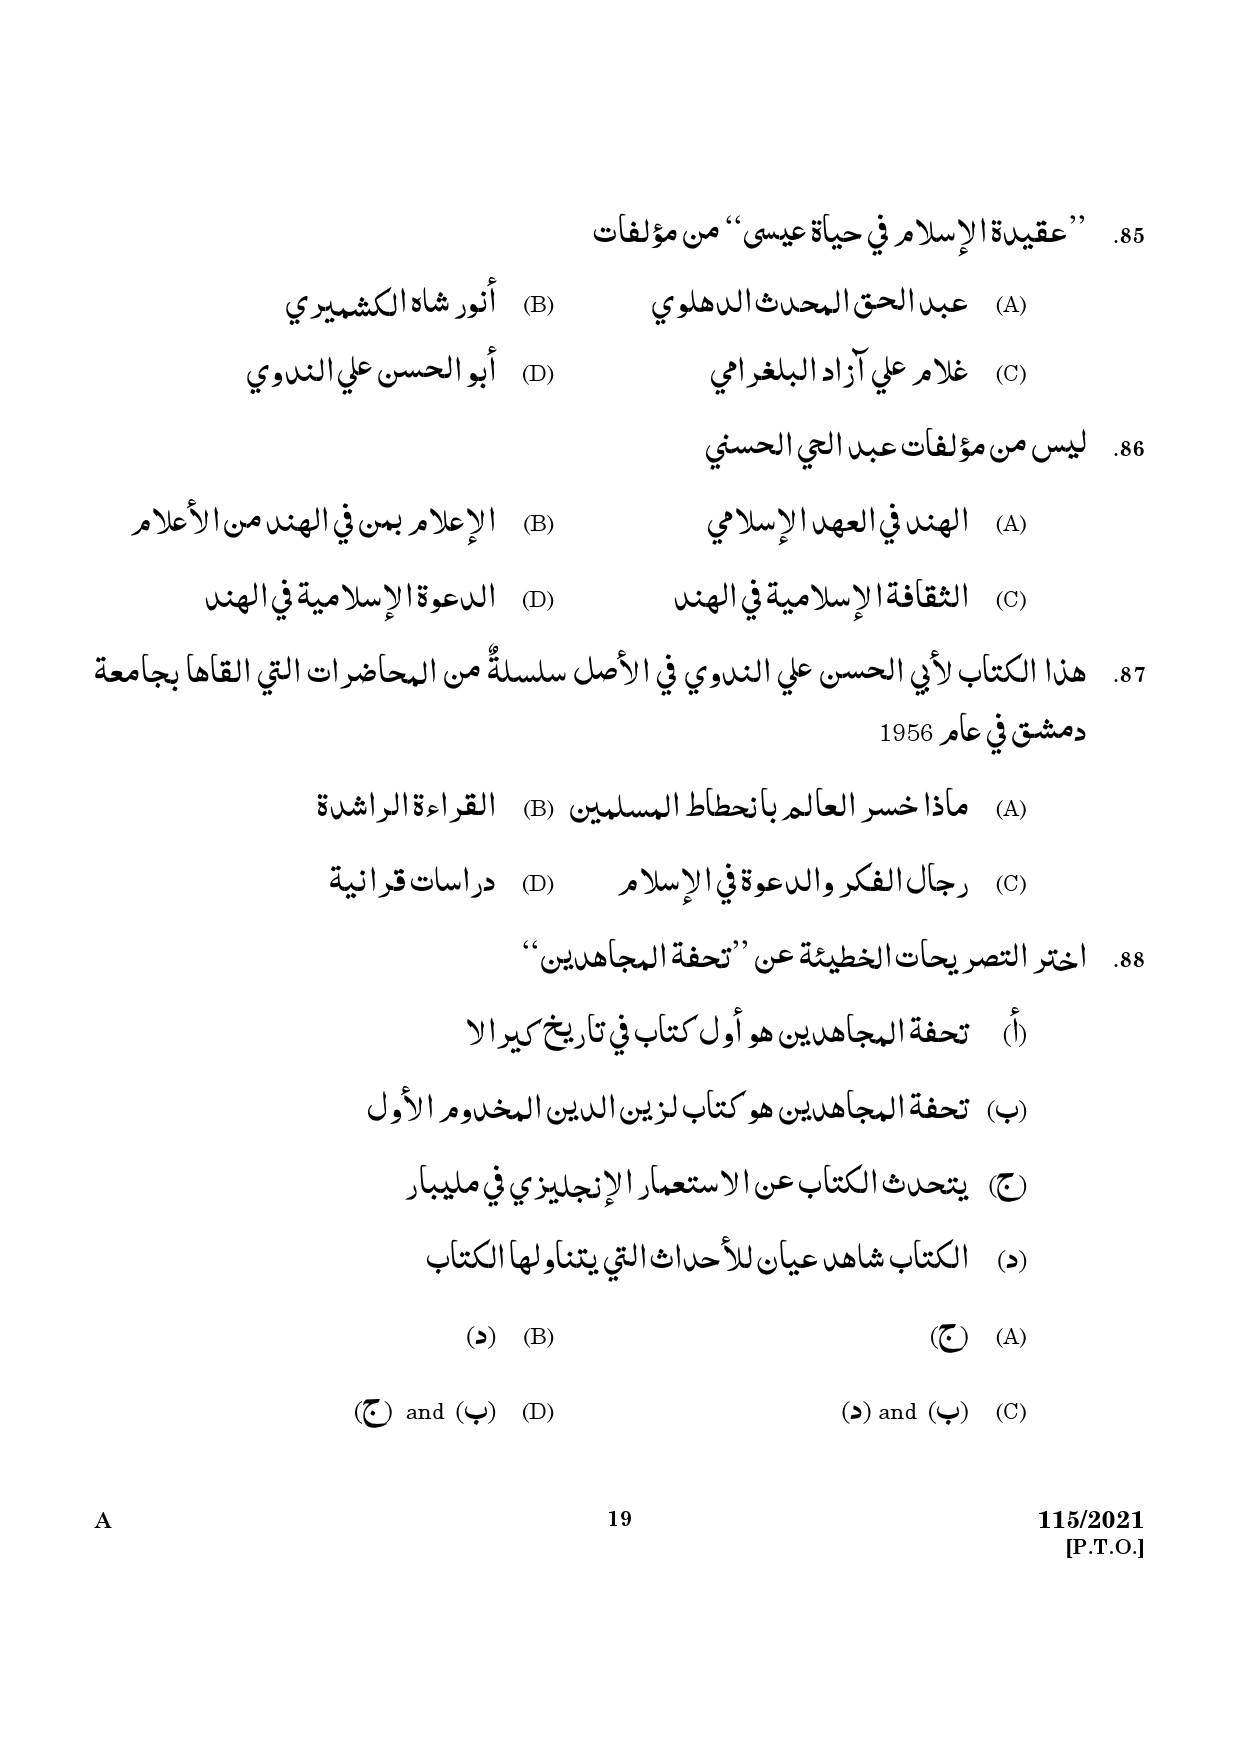 KPSC Part Time Junior Language Teacher Arabic Exam 2021 Code 1152021 17